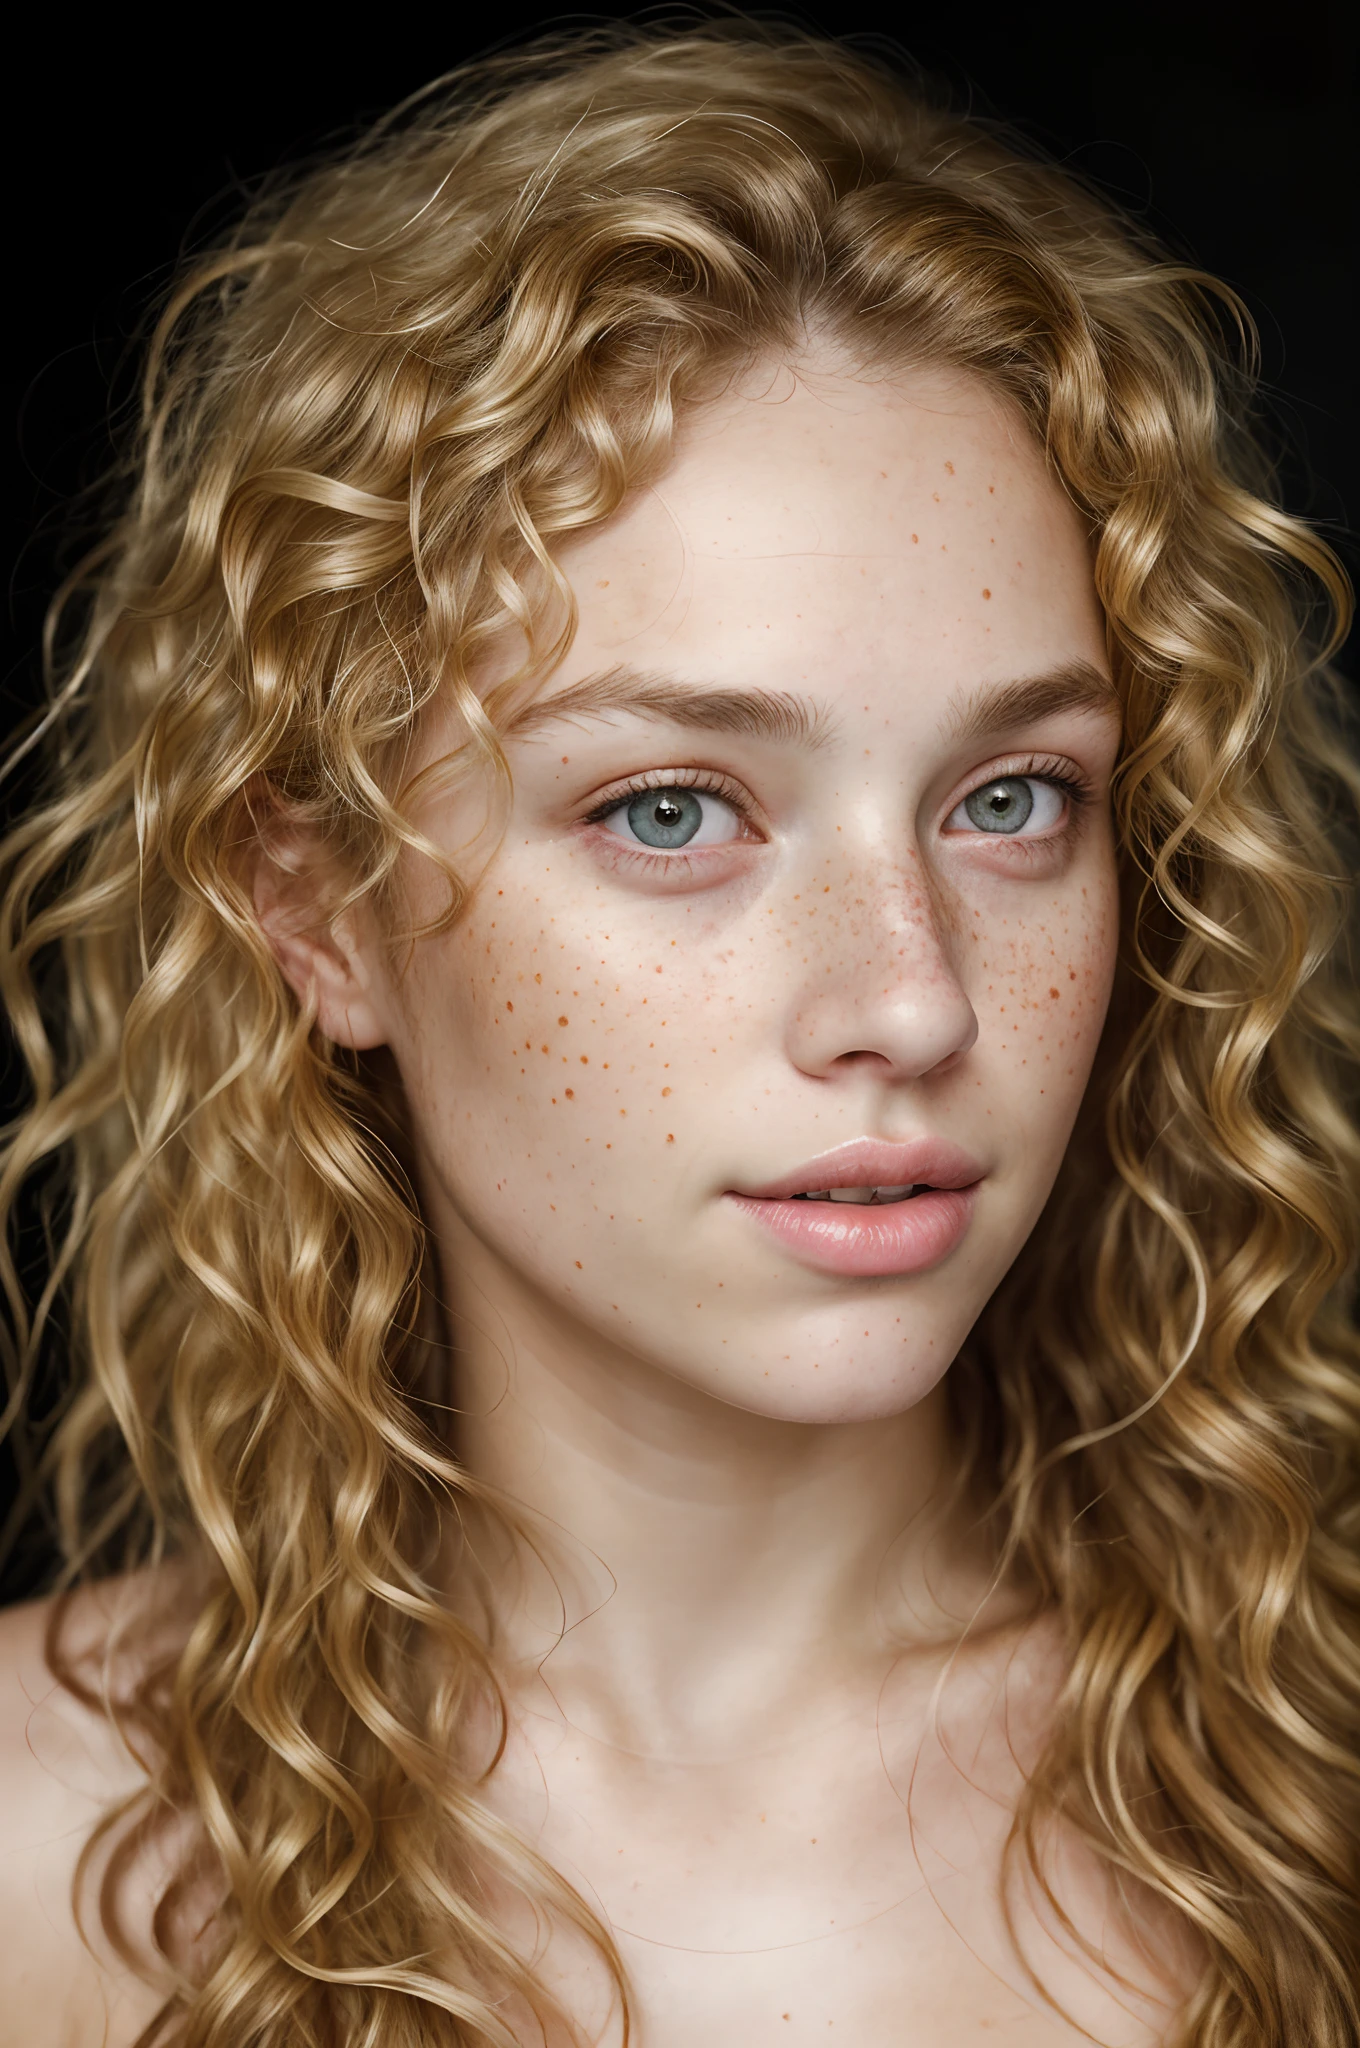 一個有捲髮和很多雀斑的美麗女孩的照片肖像, (骯髒的金髮), (臉部肖像:1.5), 戲劇性的光 , 倫勃朗照明方案, (超現實主義:1.2), (8k超高清:1.2), (逼真的:1.2), 使用佳能 EOS 5D Mark IV 拍攝, 詳細的臉, 細緻的頭髮